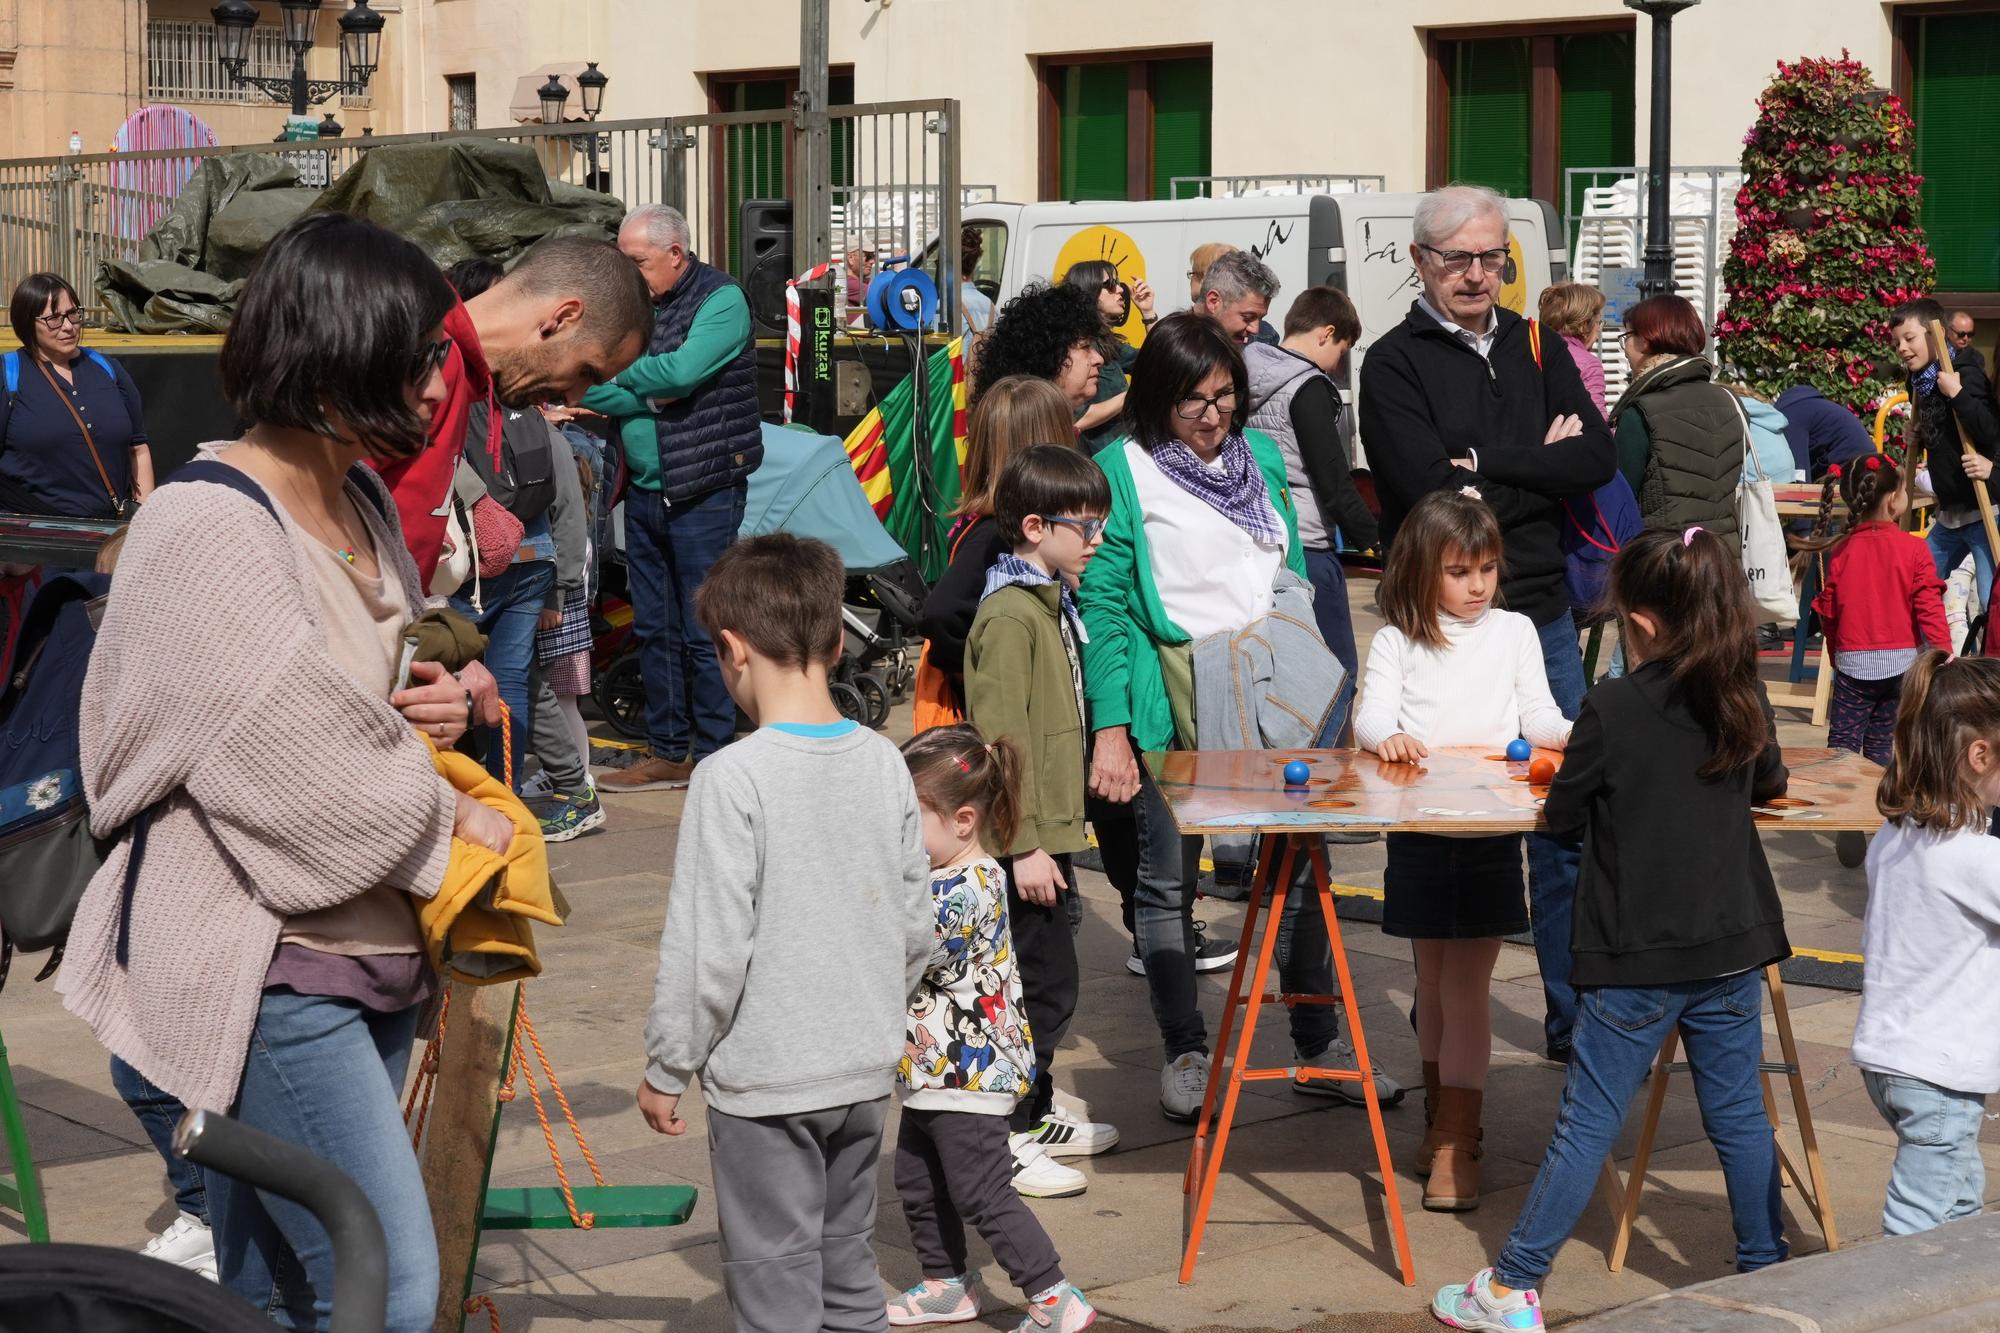 Galería de fotos: Los más pequeños se divierten jugando en la Plaza Mayor de Castelló